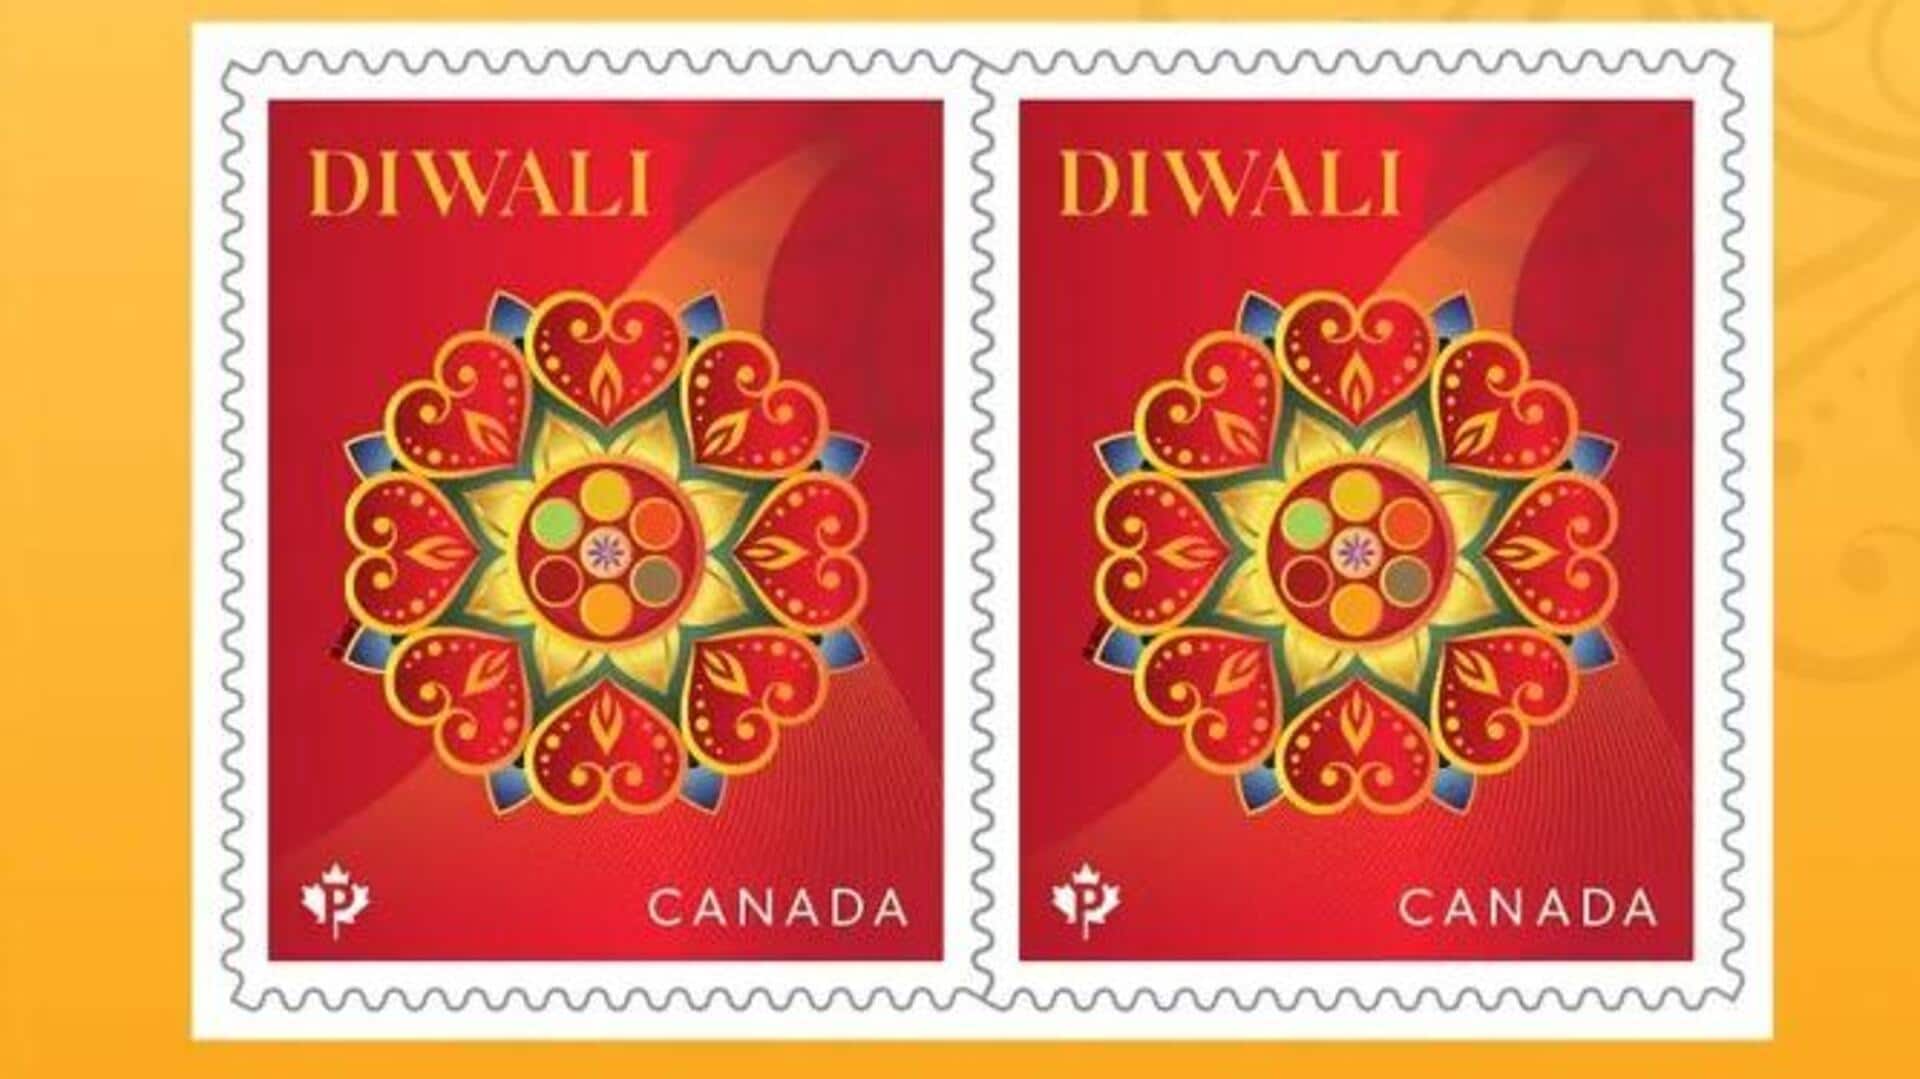 कनाडा ने दिवाली पर जारी किया डाक टिकट, जानिए क्या है खास बात